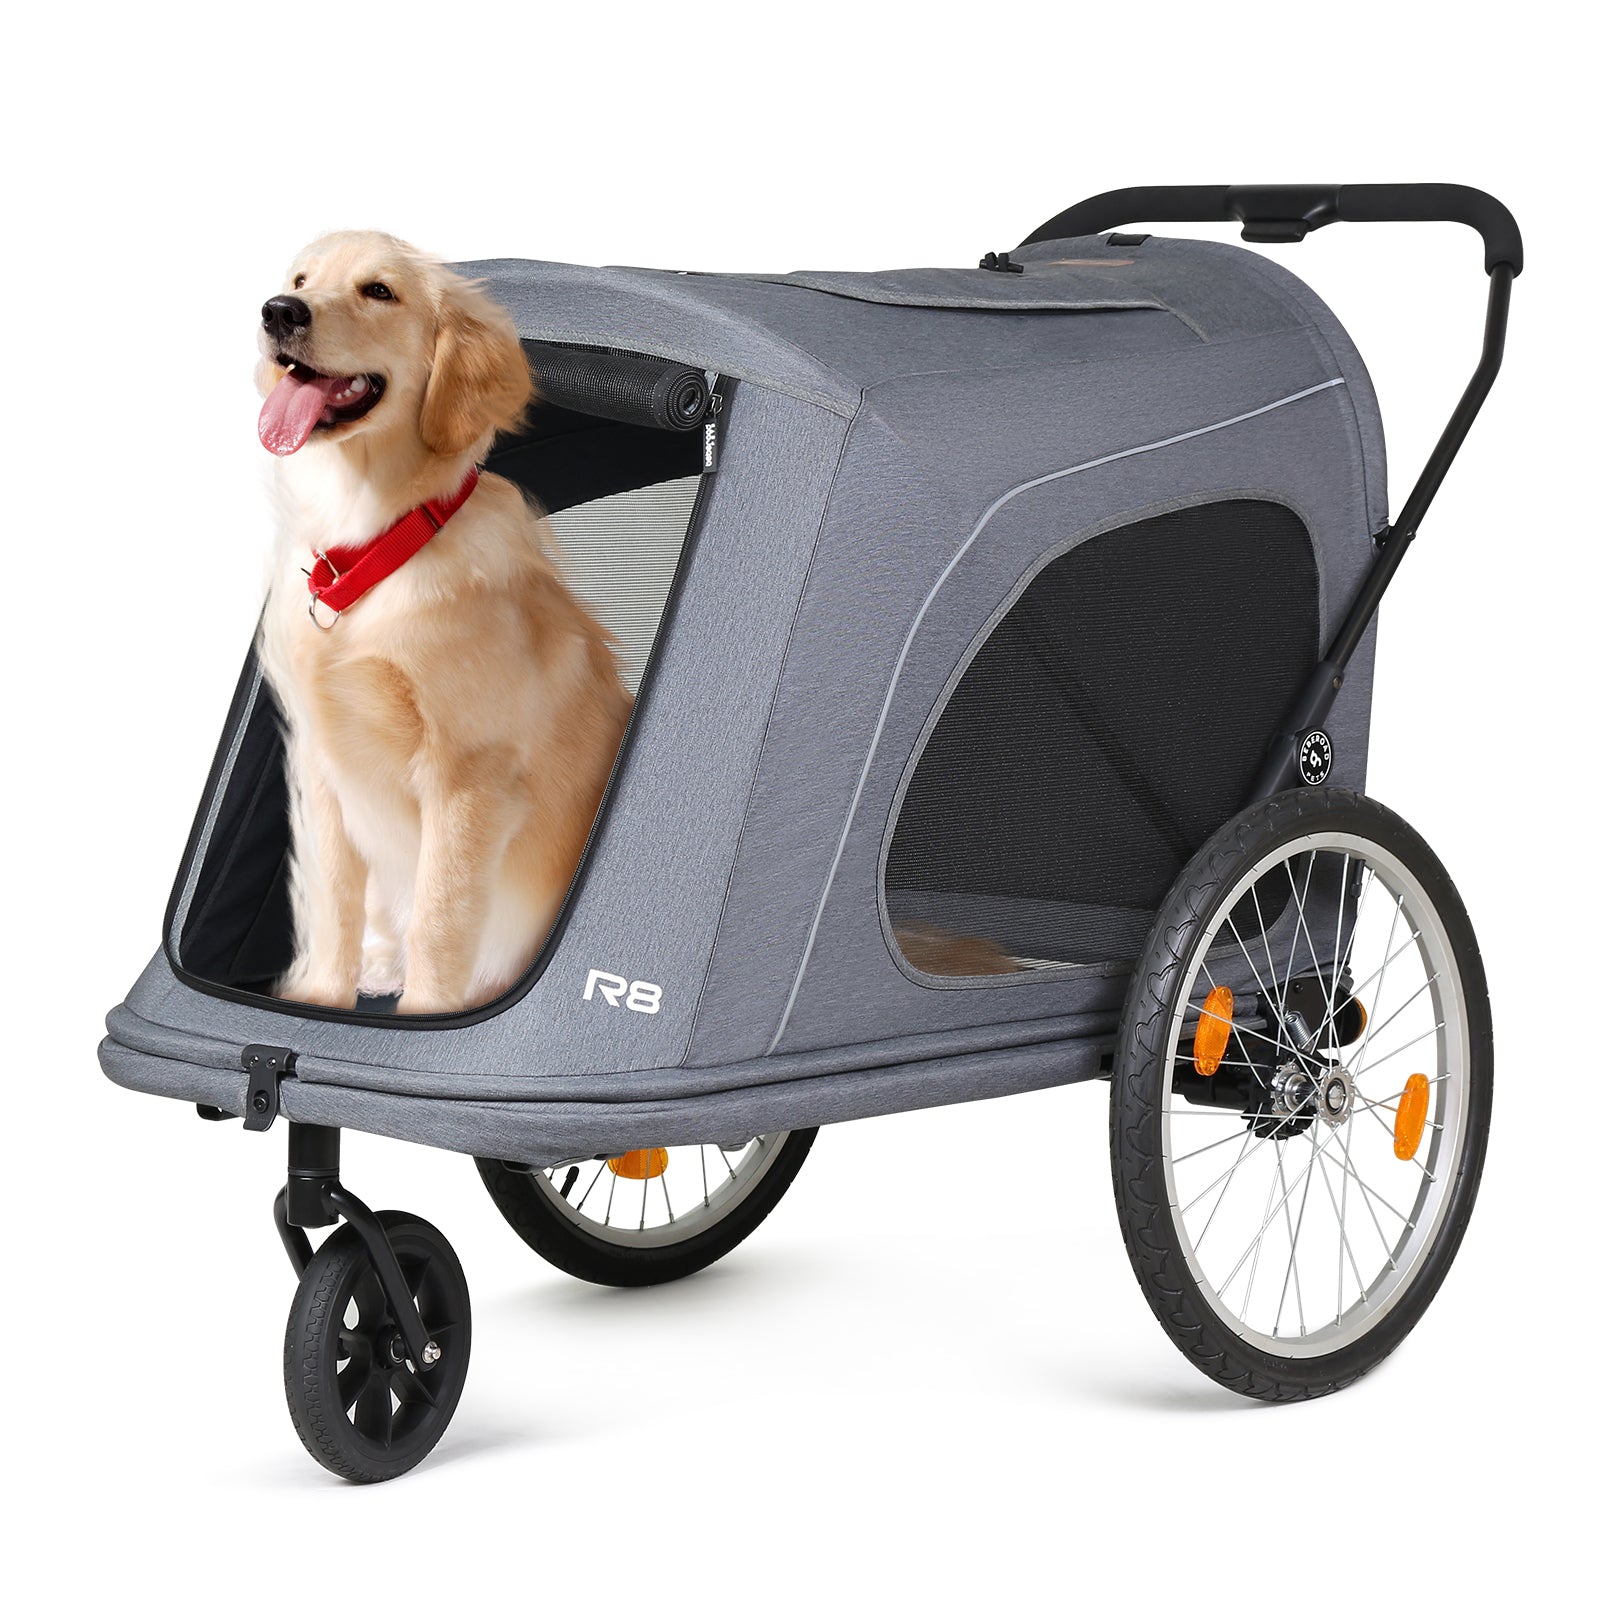 R8 Foldable Pet Stroller - Outlet Deal Item